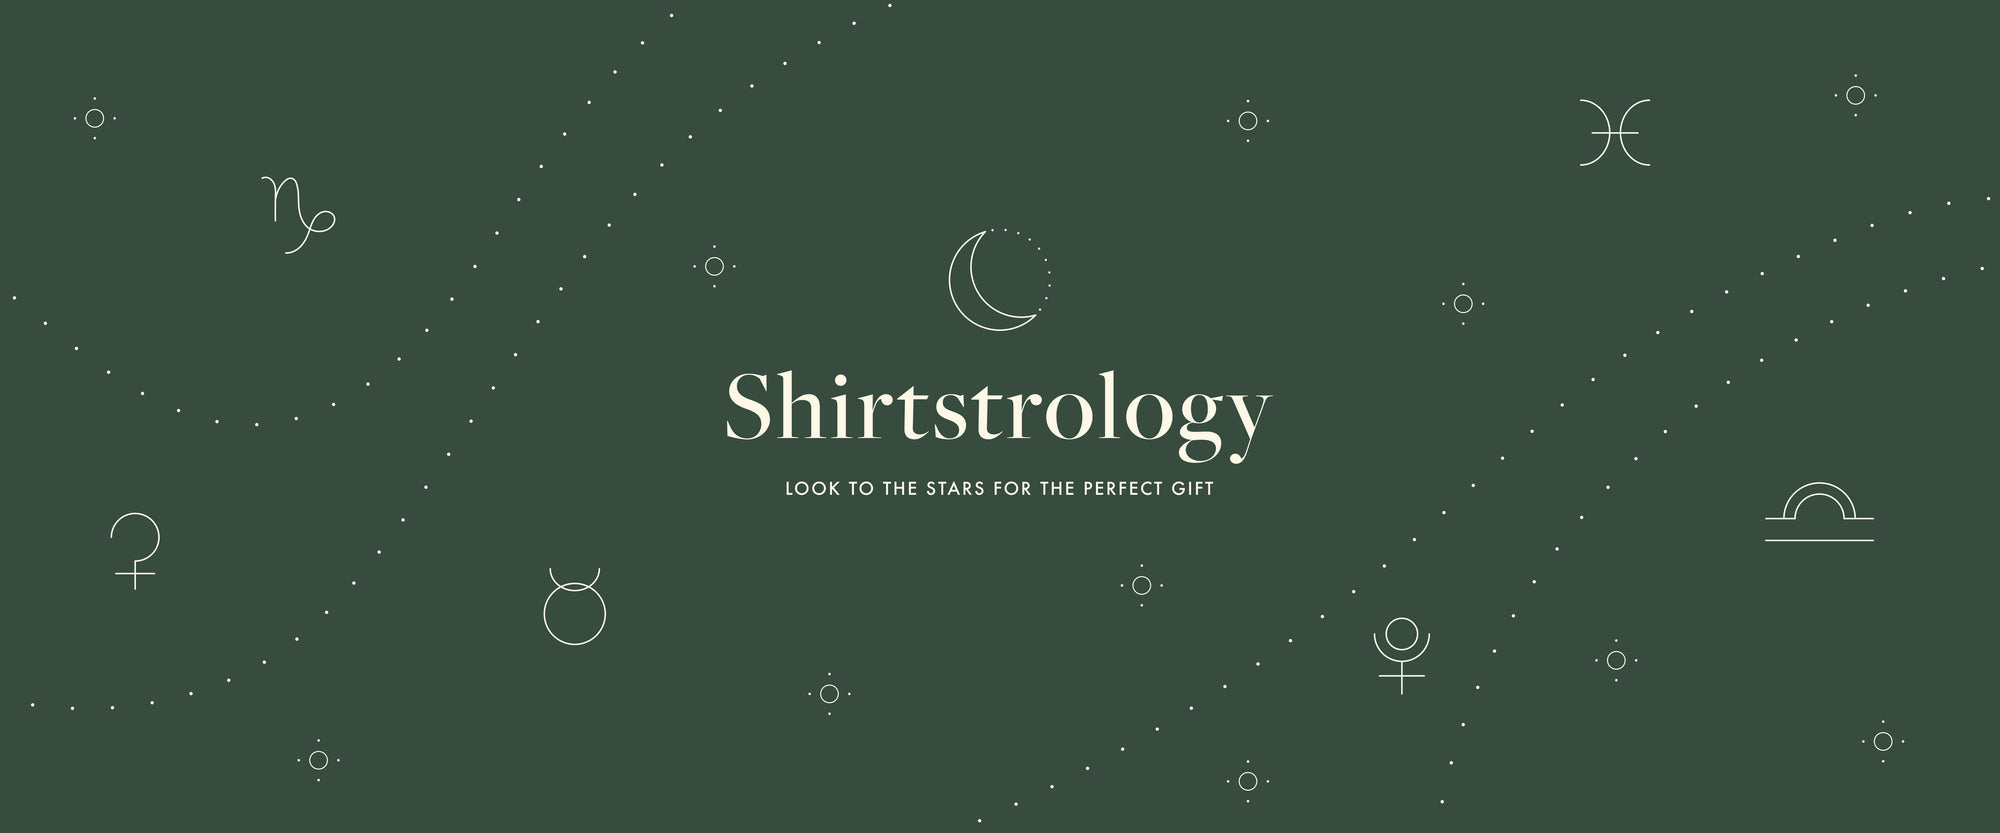 Poplinen's Shirtstrology Gift Guide